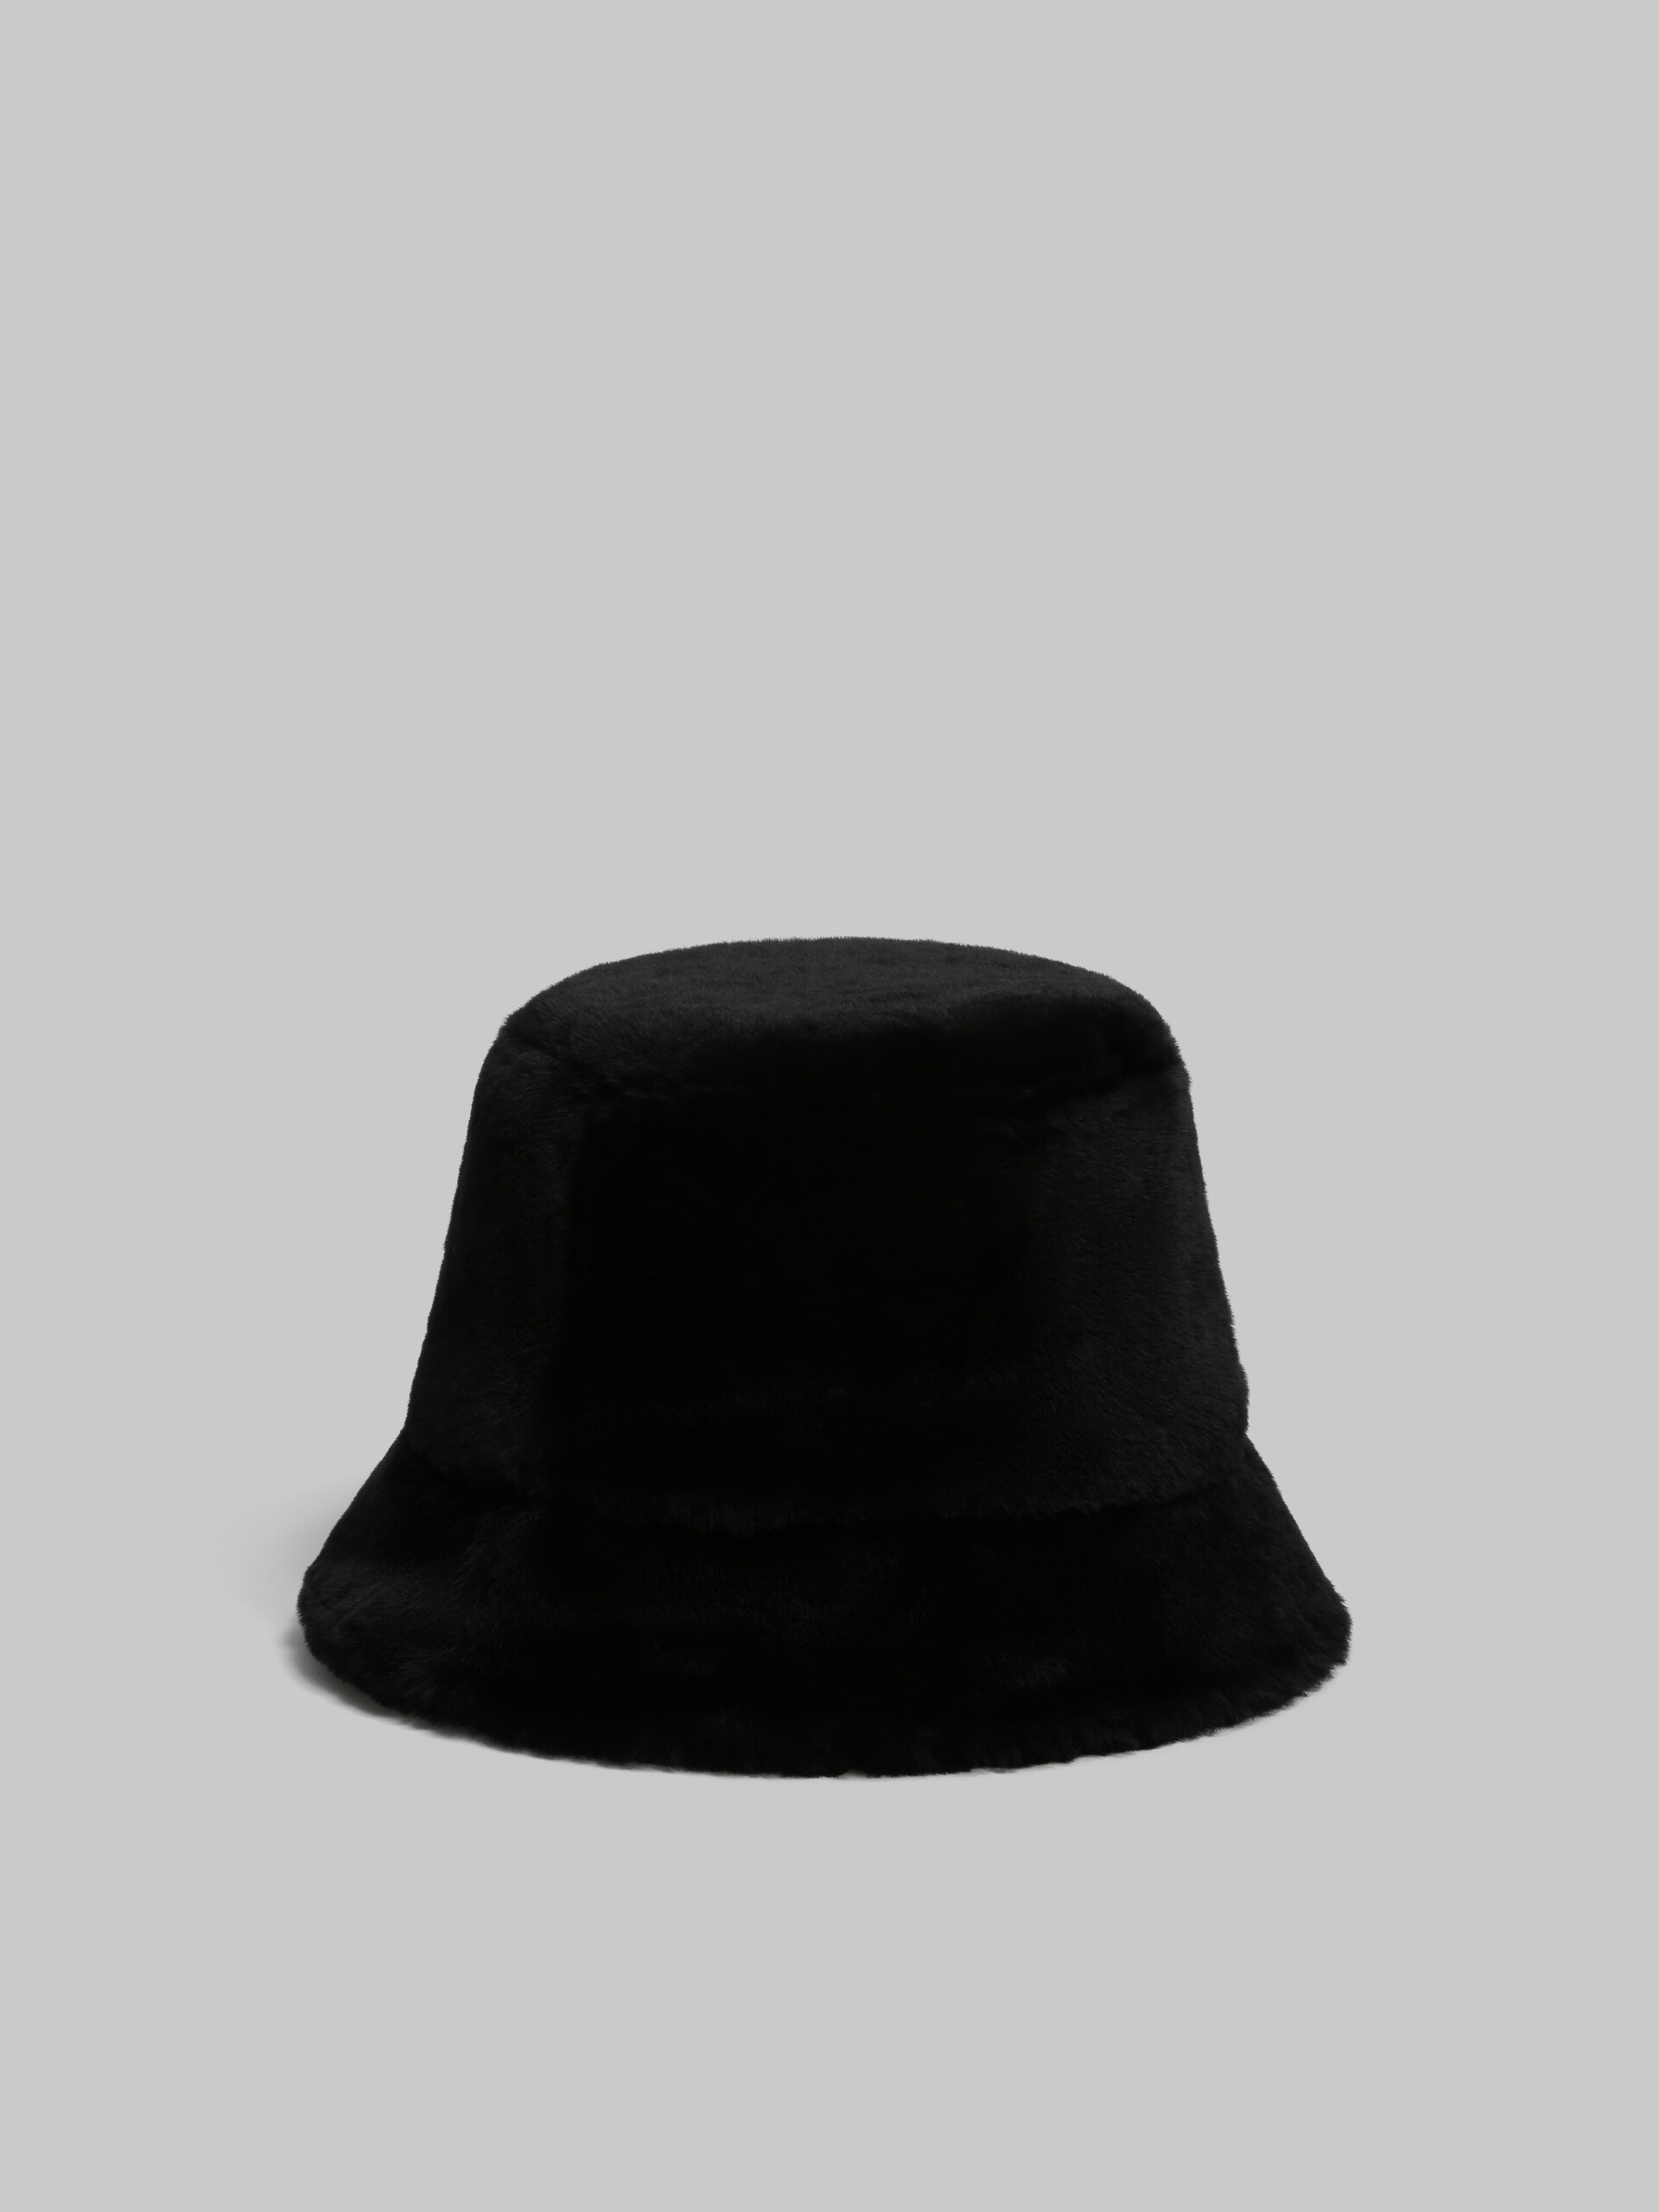 Gorro de pescador negro de borreguito rasurado - Sombrero - Image 3